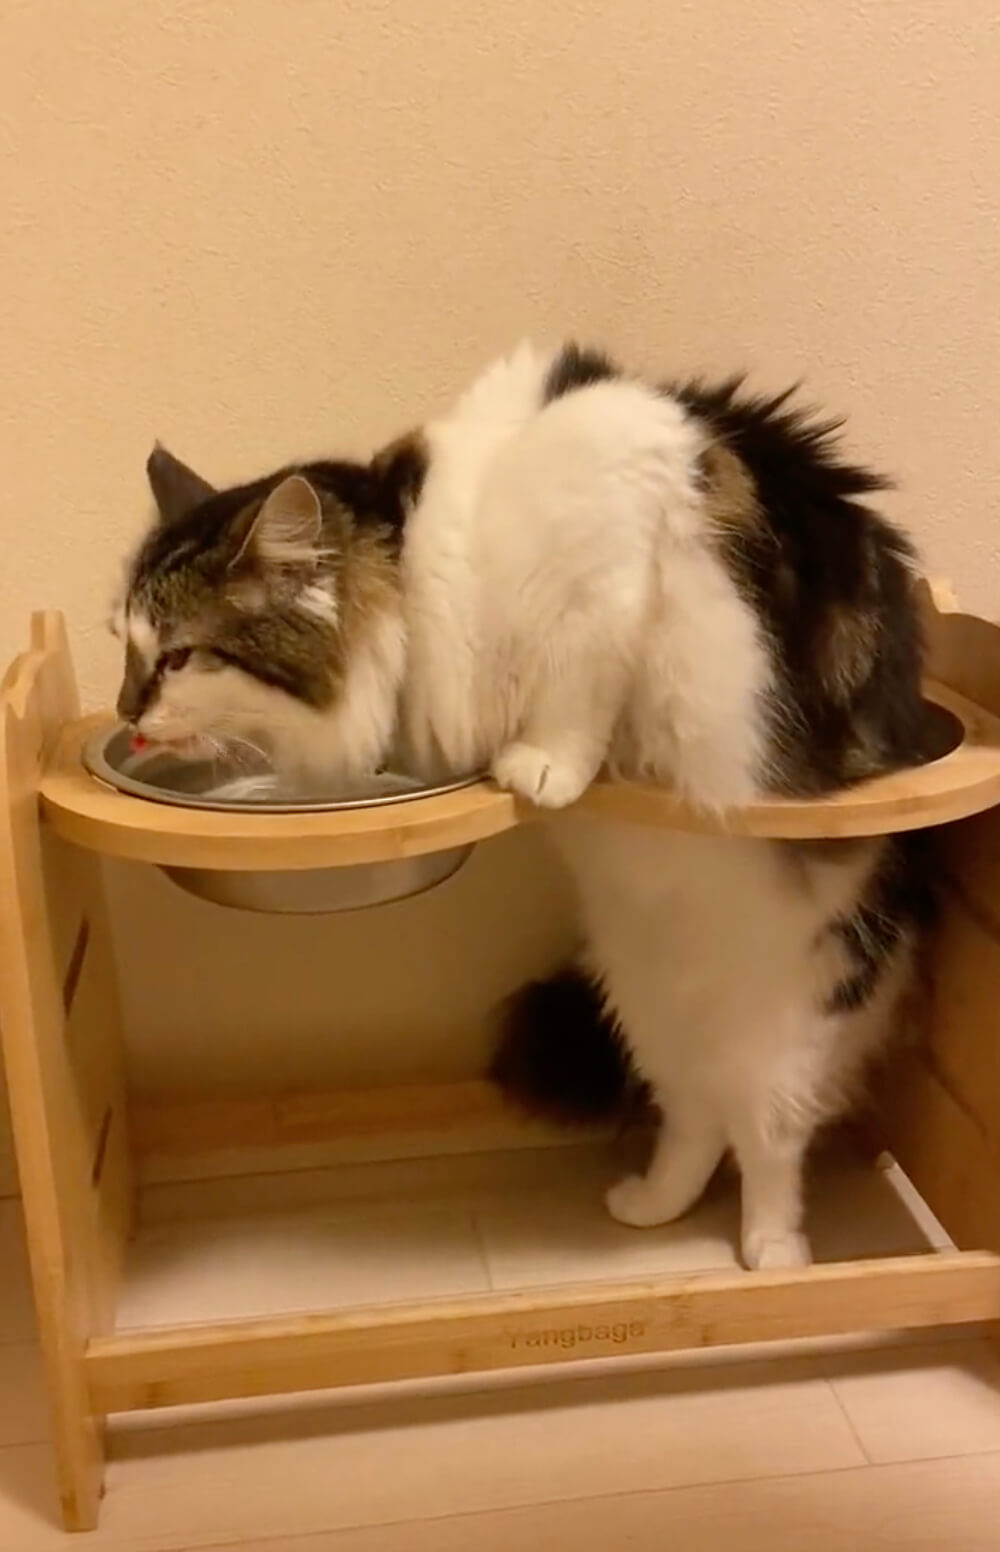 穴をくぐり変わった姿勢で水を飲む猫